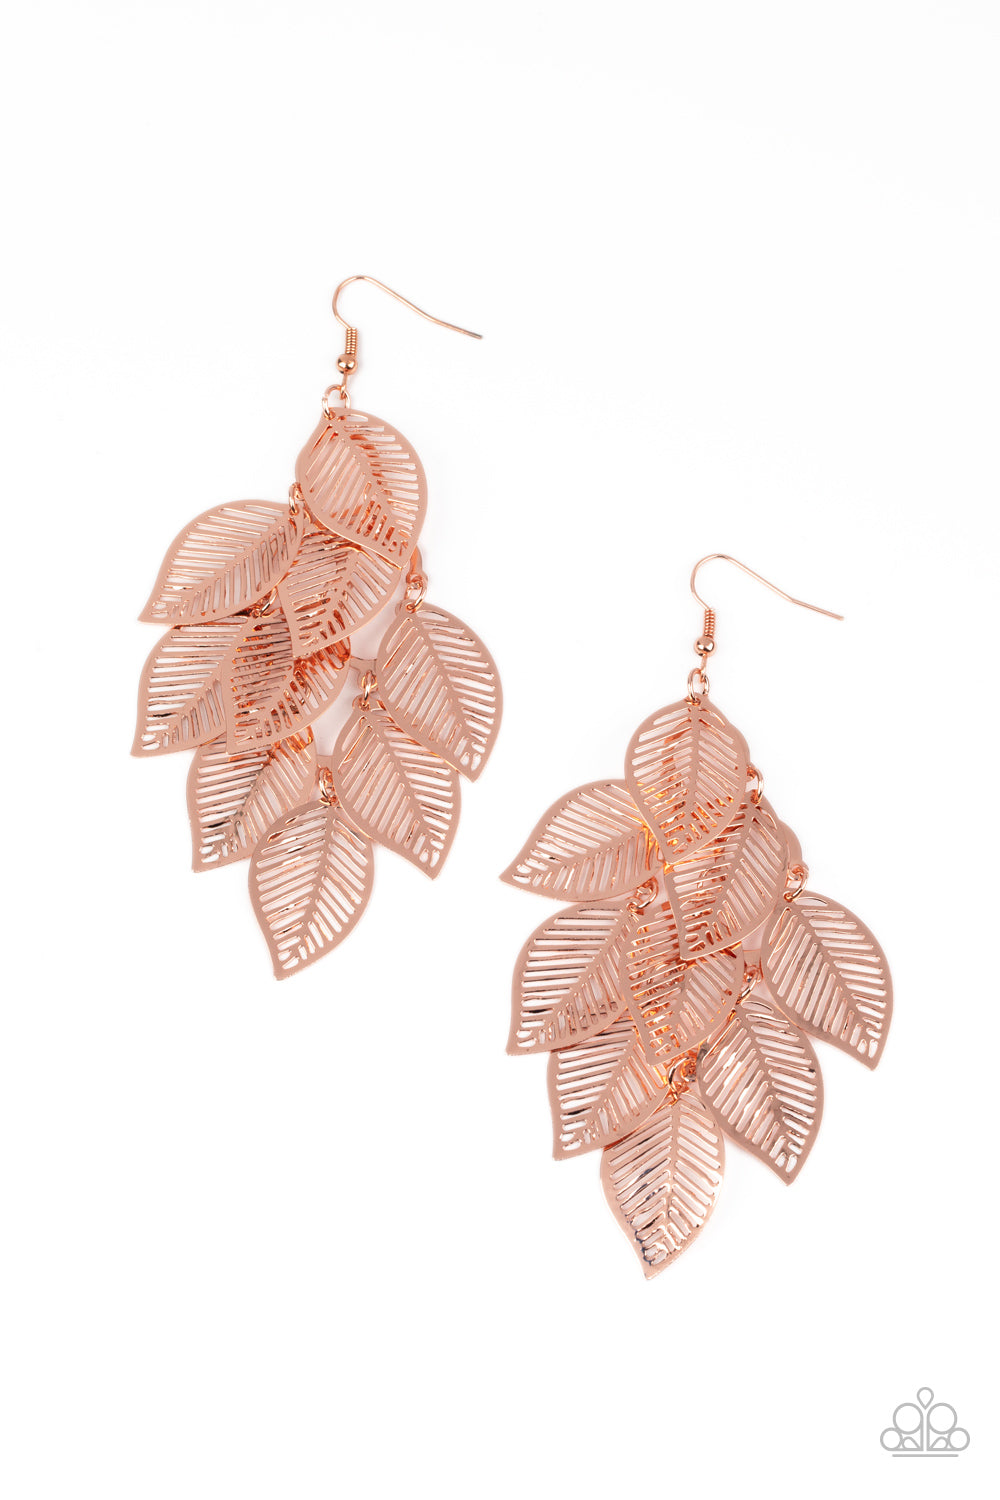 Limitlessly Leafy - Copper earrings